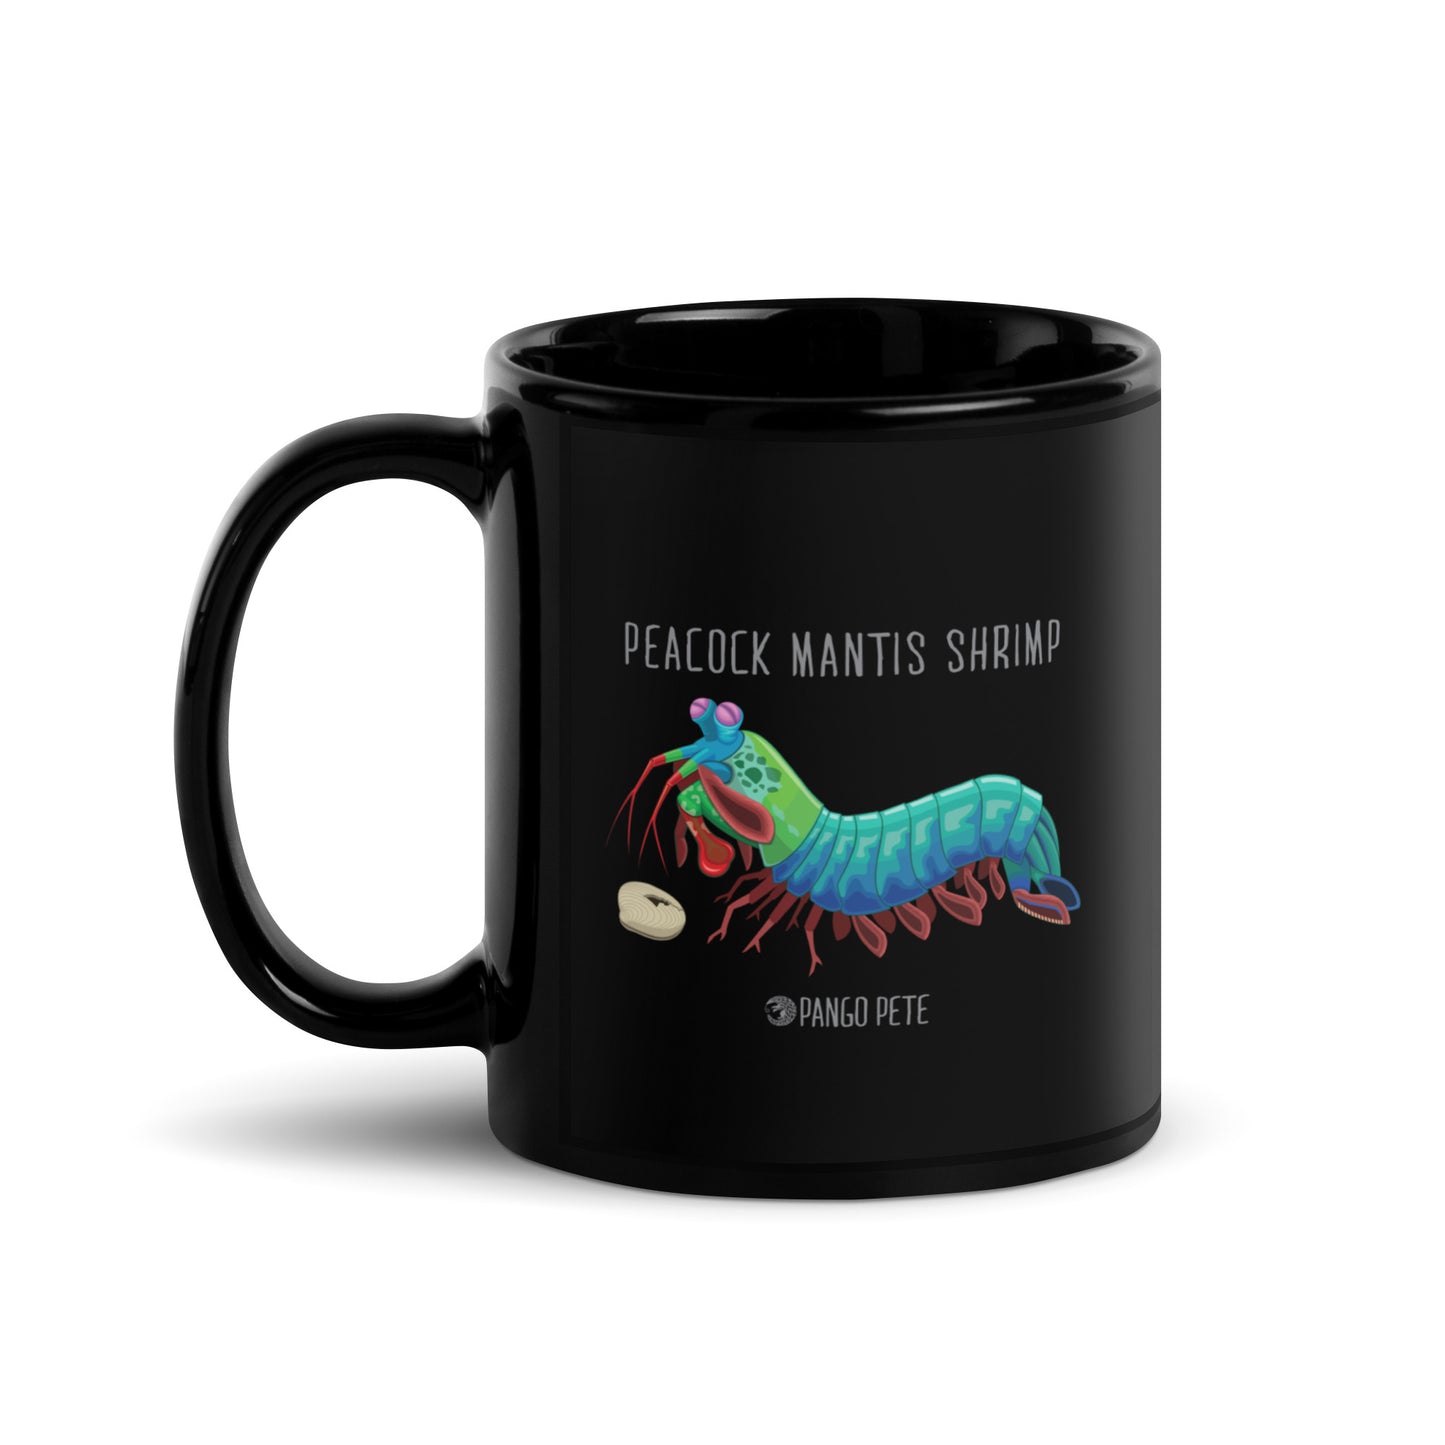 Peacock Mantis Shrimp Mug — Black, 11 oz.